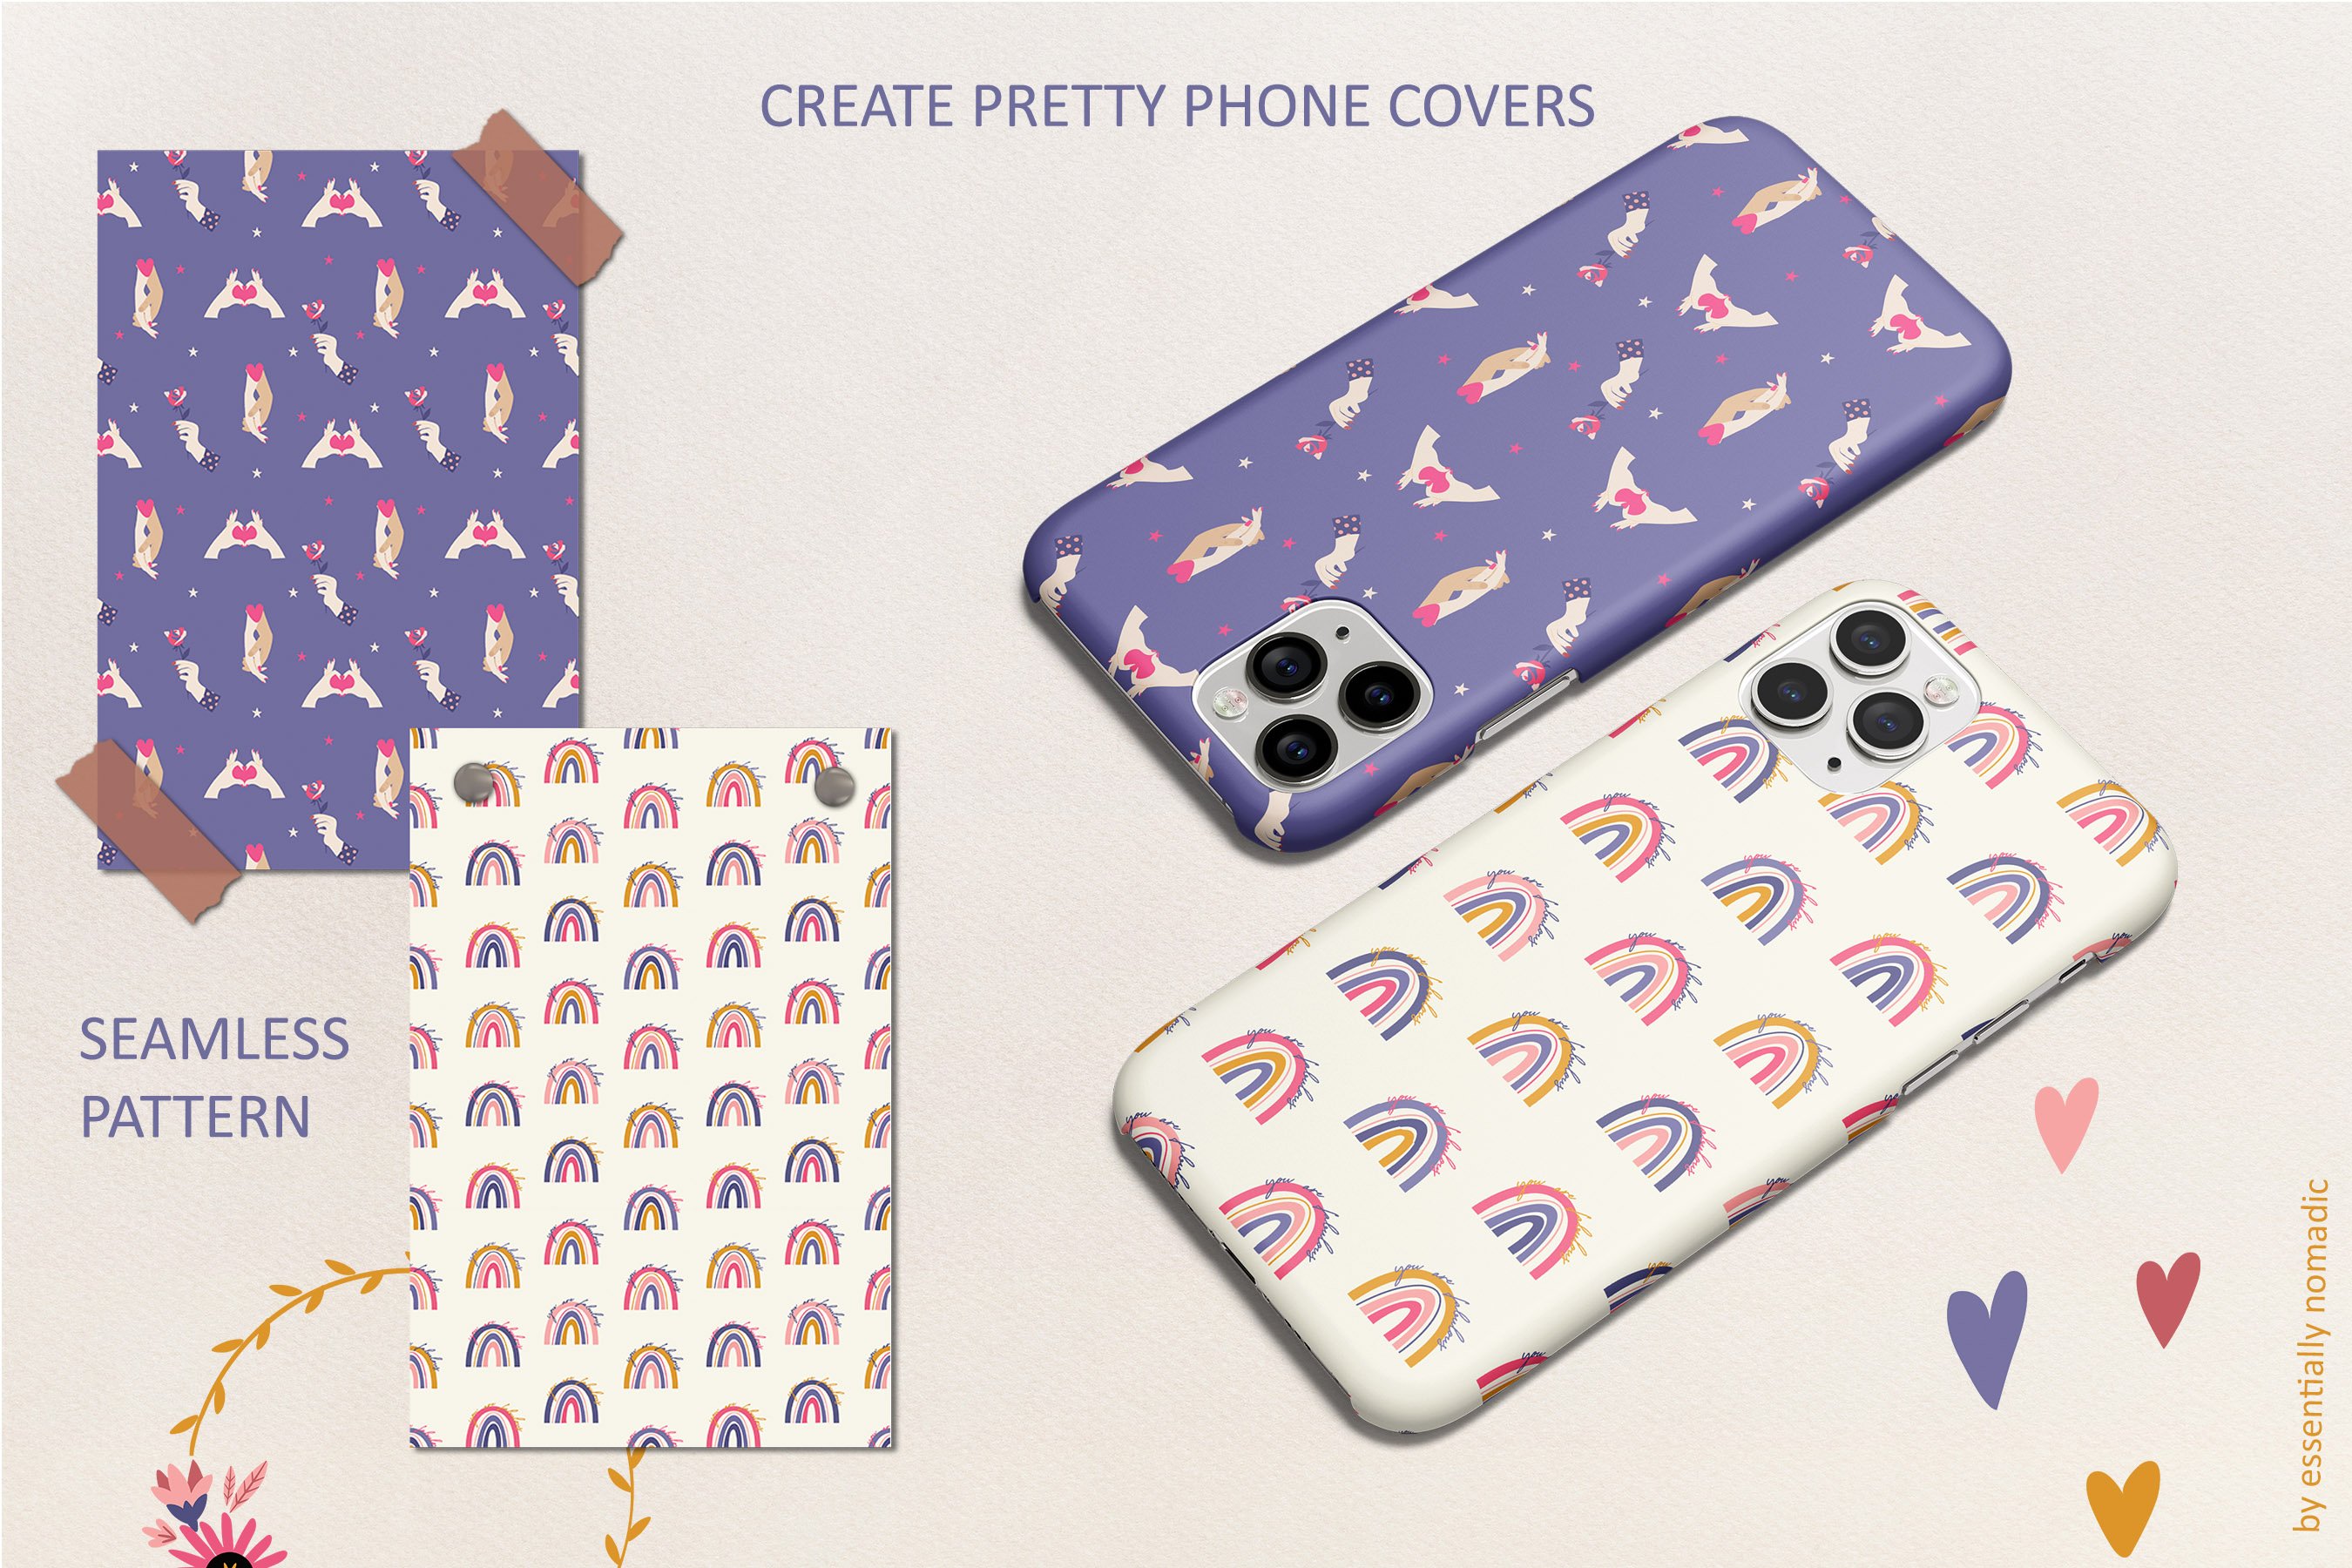 Create pretty phone covers.